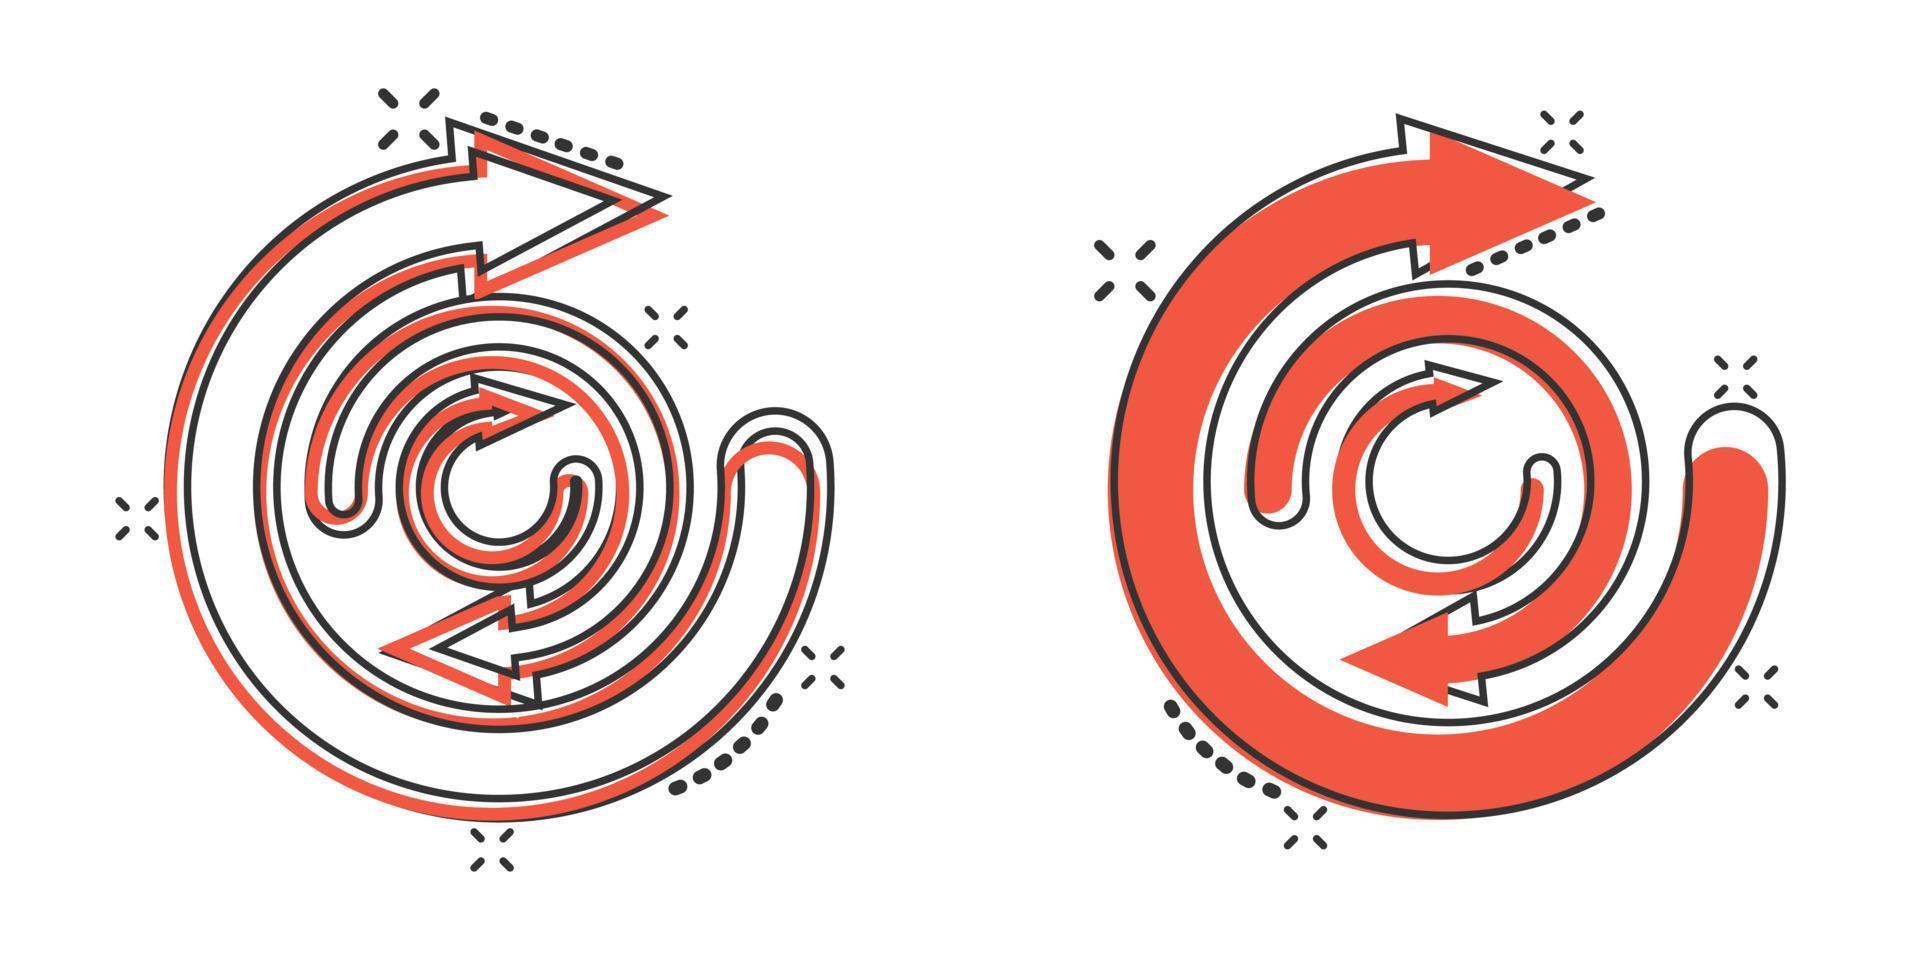 Pfeil-Zyklus-Symbol im Comic-Stil. recyceln Sie Öko-Cartoon-Vektorillustration auf weißem, isoliertem Hintergrund. Geschäftskonzept mit Splash-Effekt. vektor